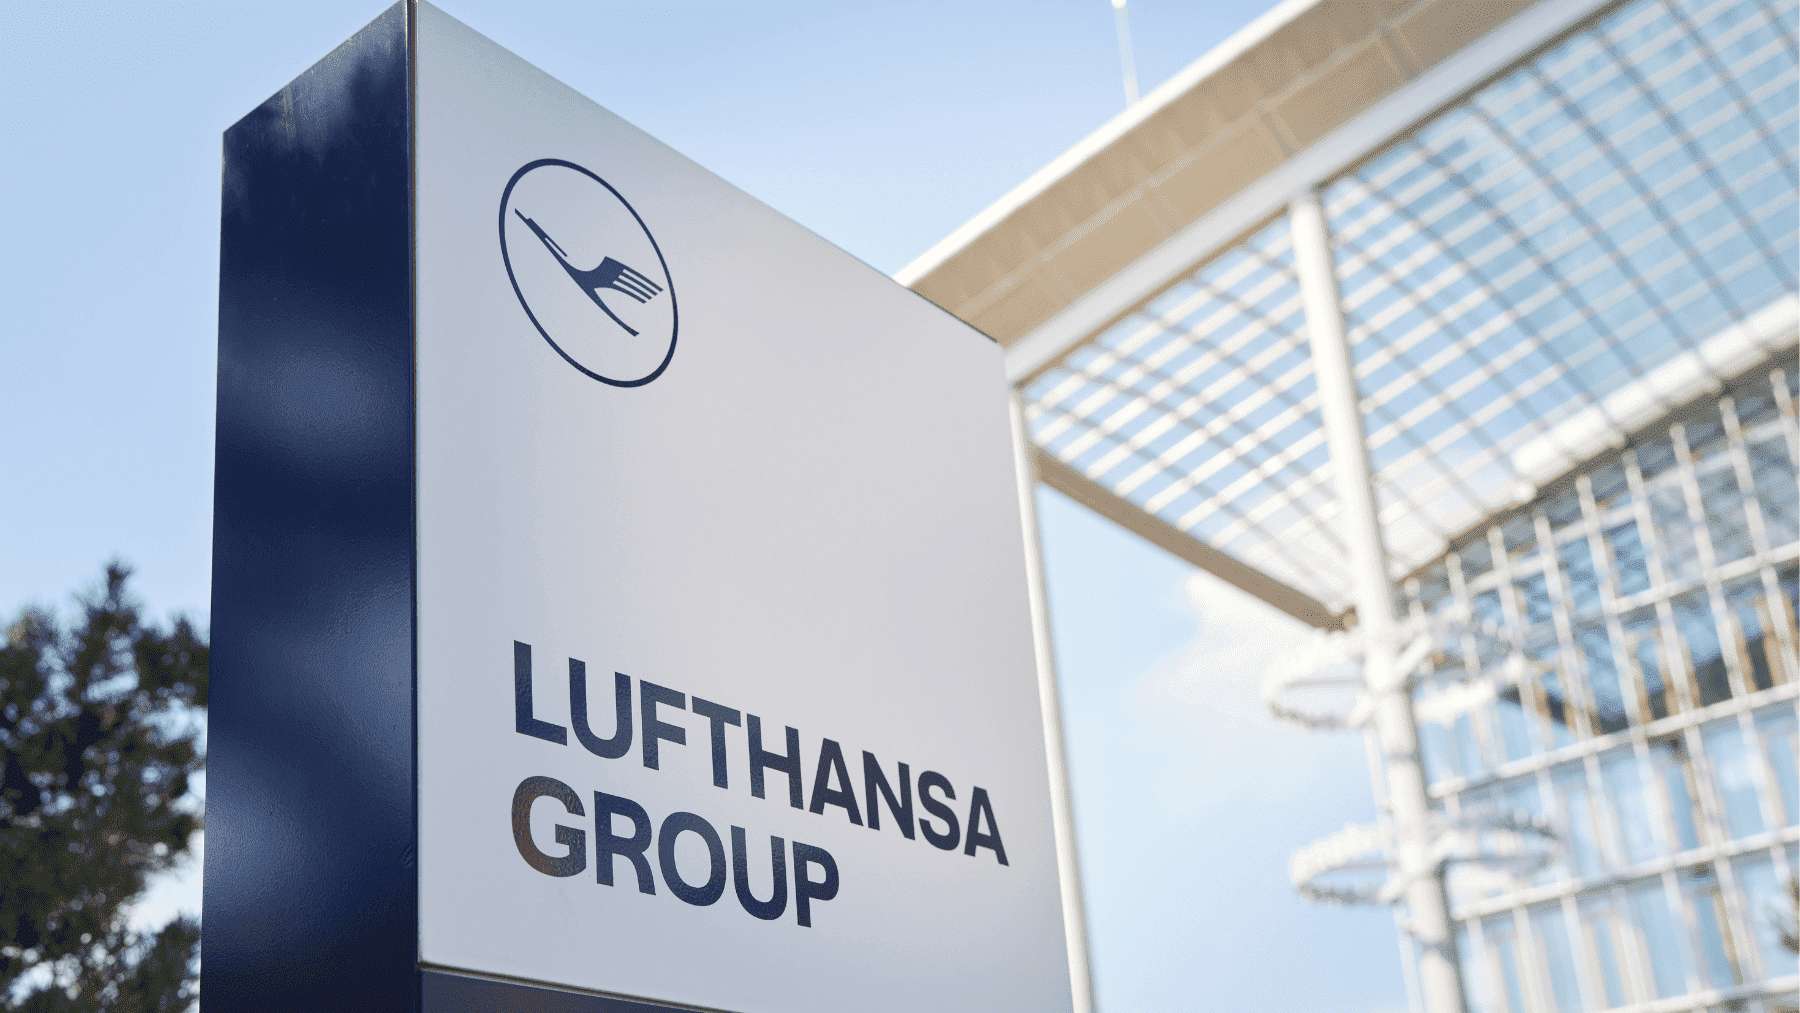 Sede del Grupo Lufthansa.   (Foto: Lufthansa)